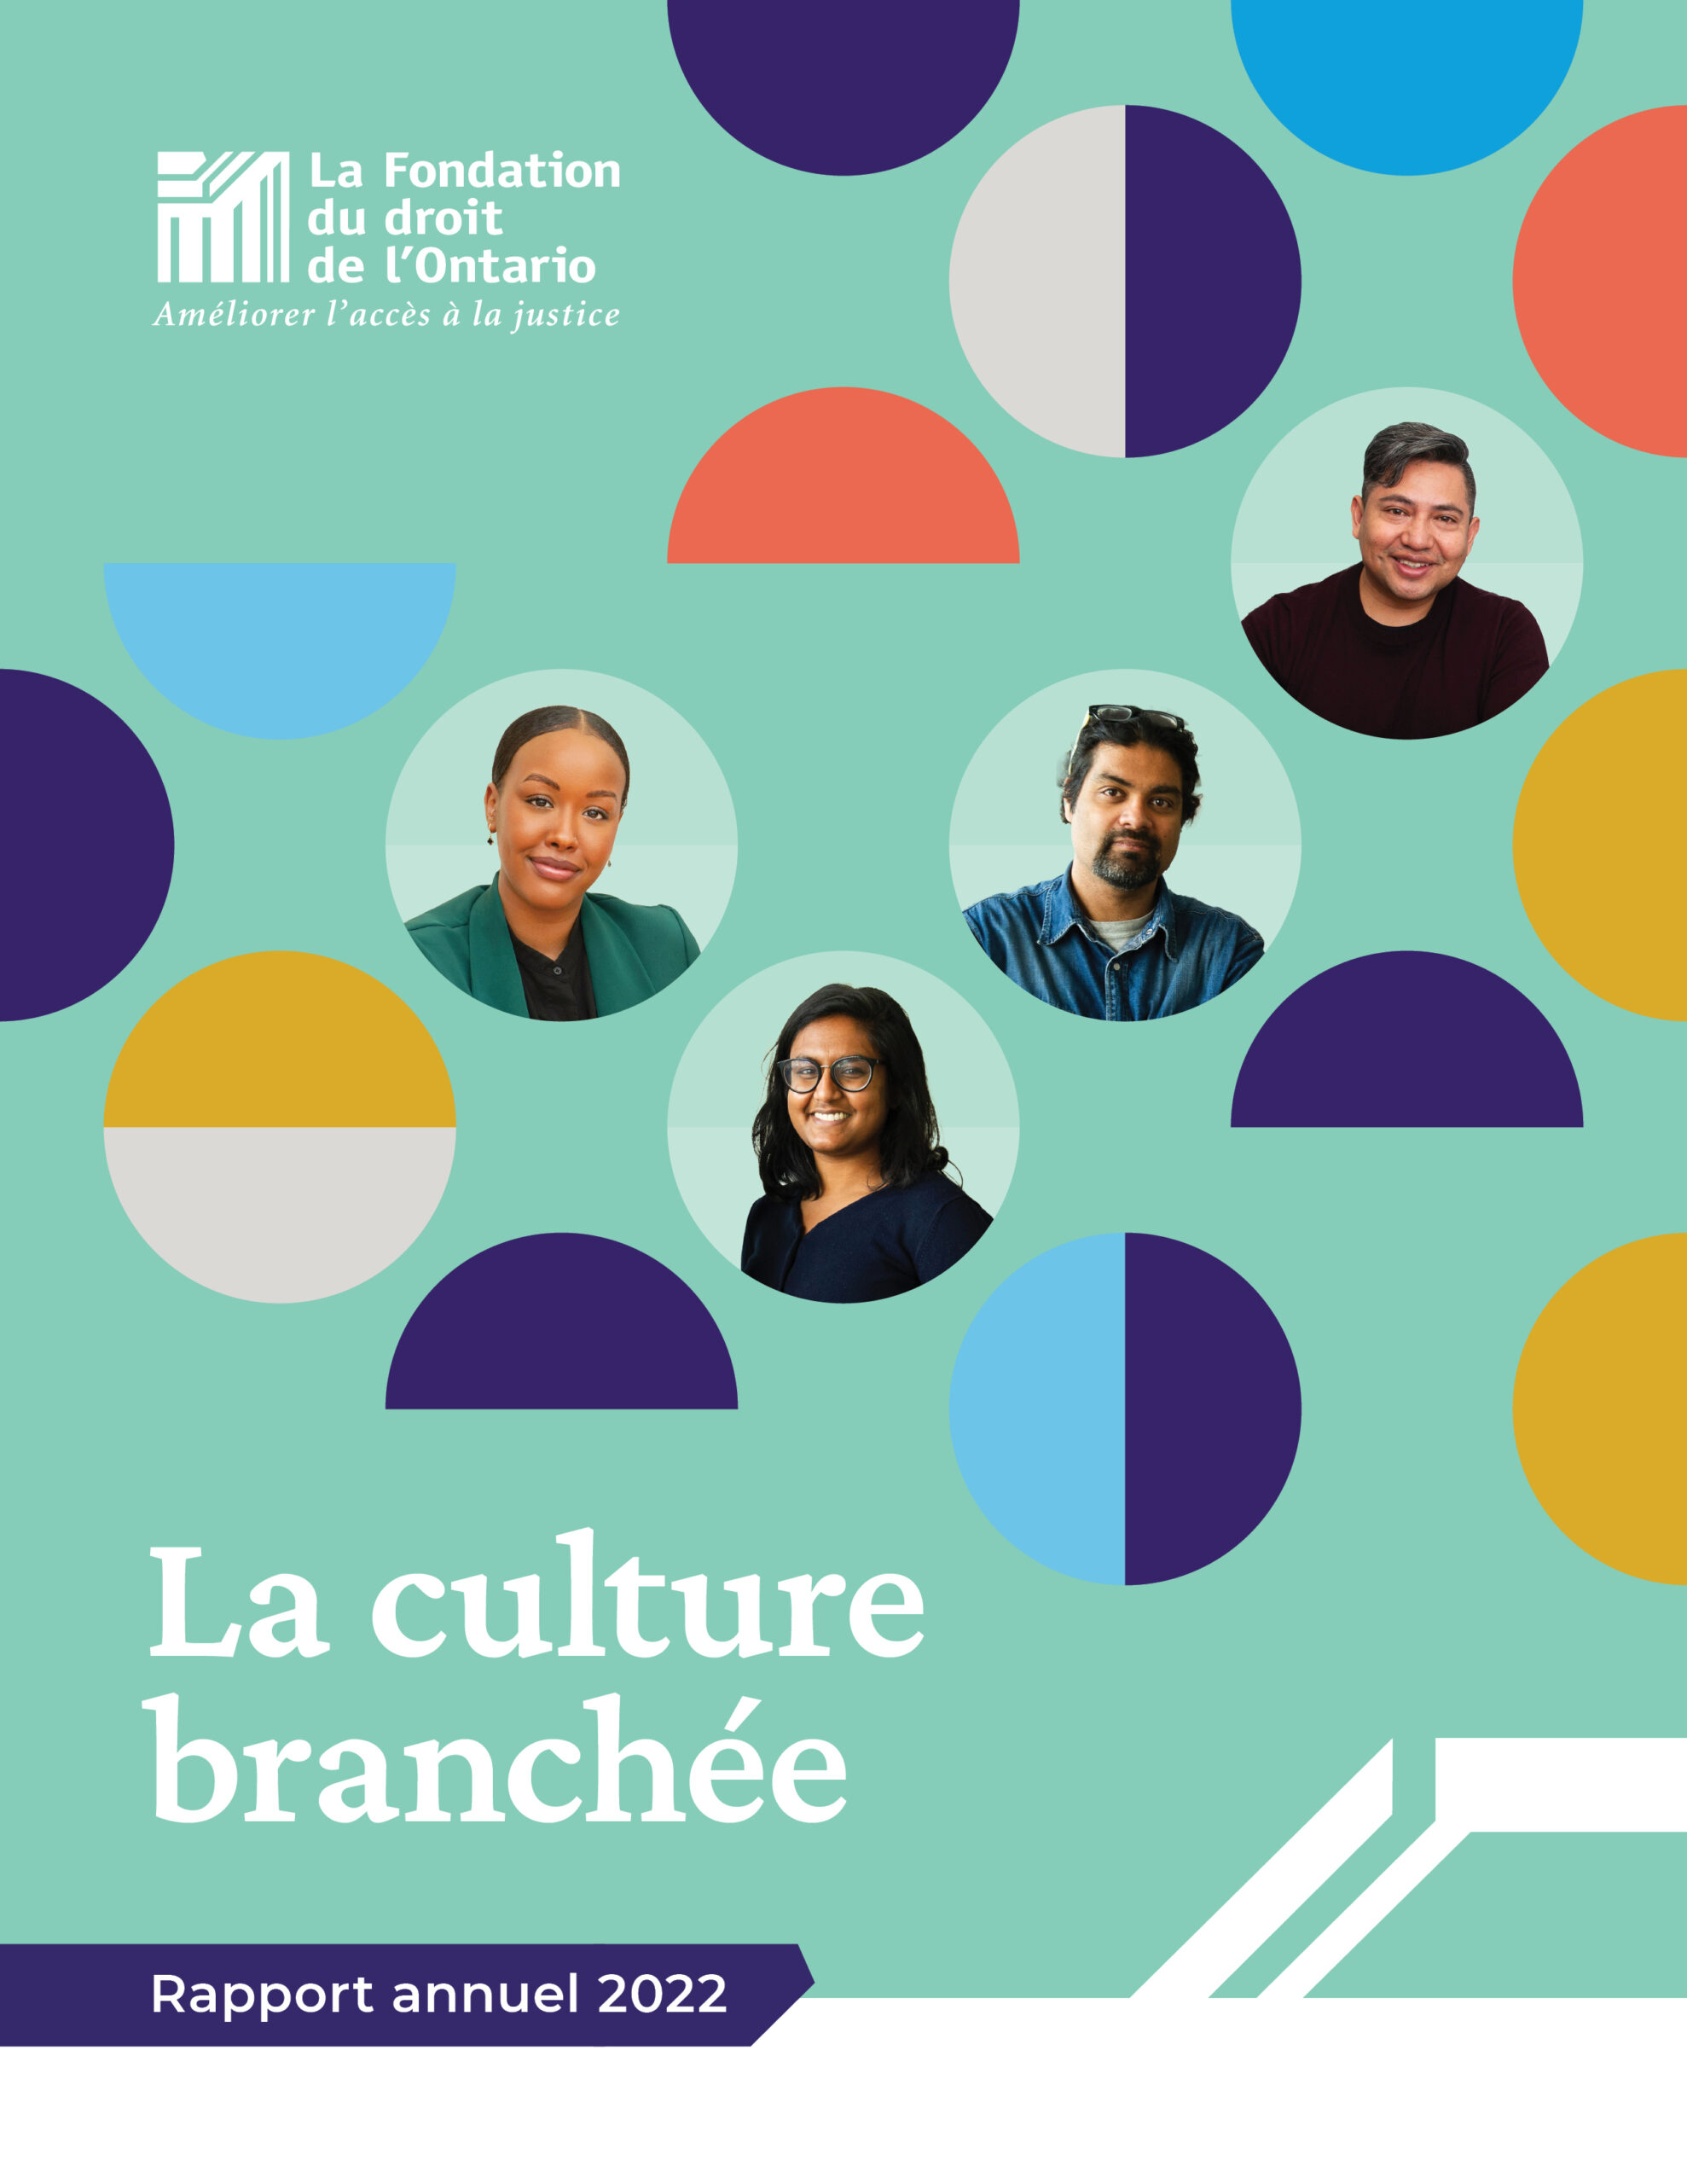 La couverture du rapport montre des photos de 4 personnes dans des cercles colorés et un texte indiquant "La culture branchée, Rapport annuel 2022"